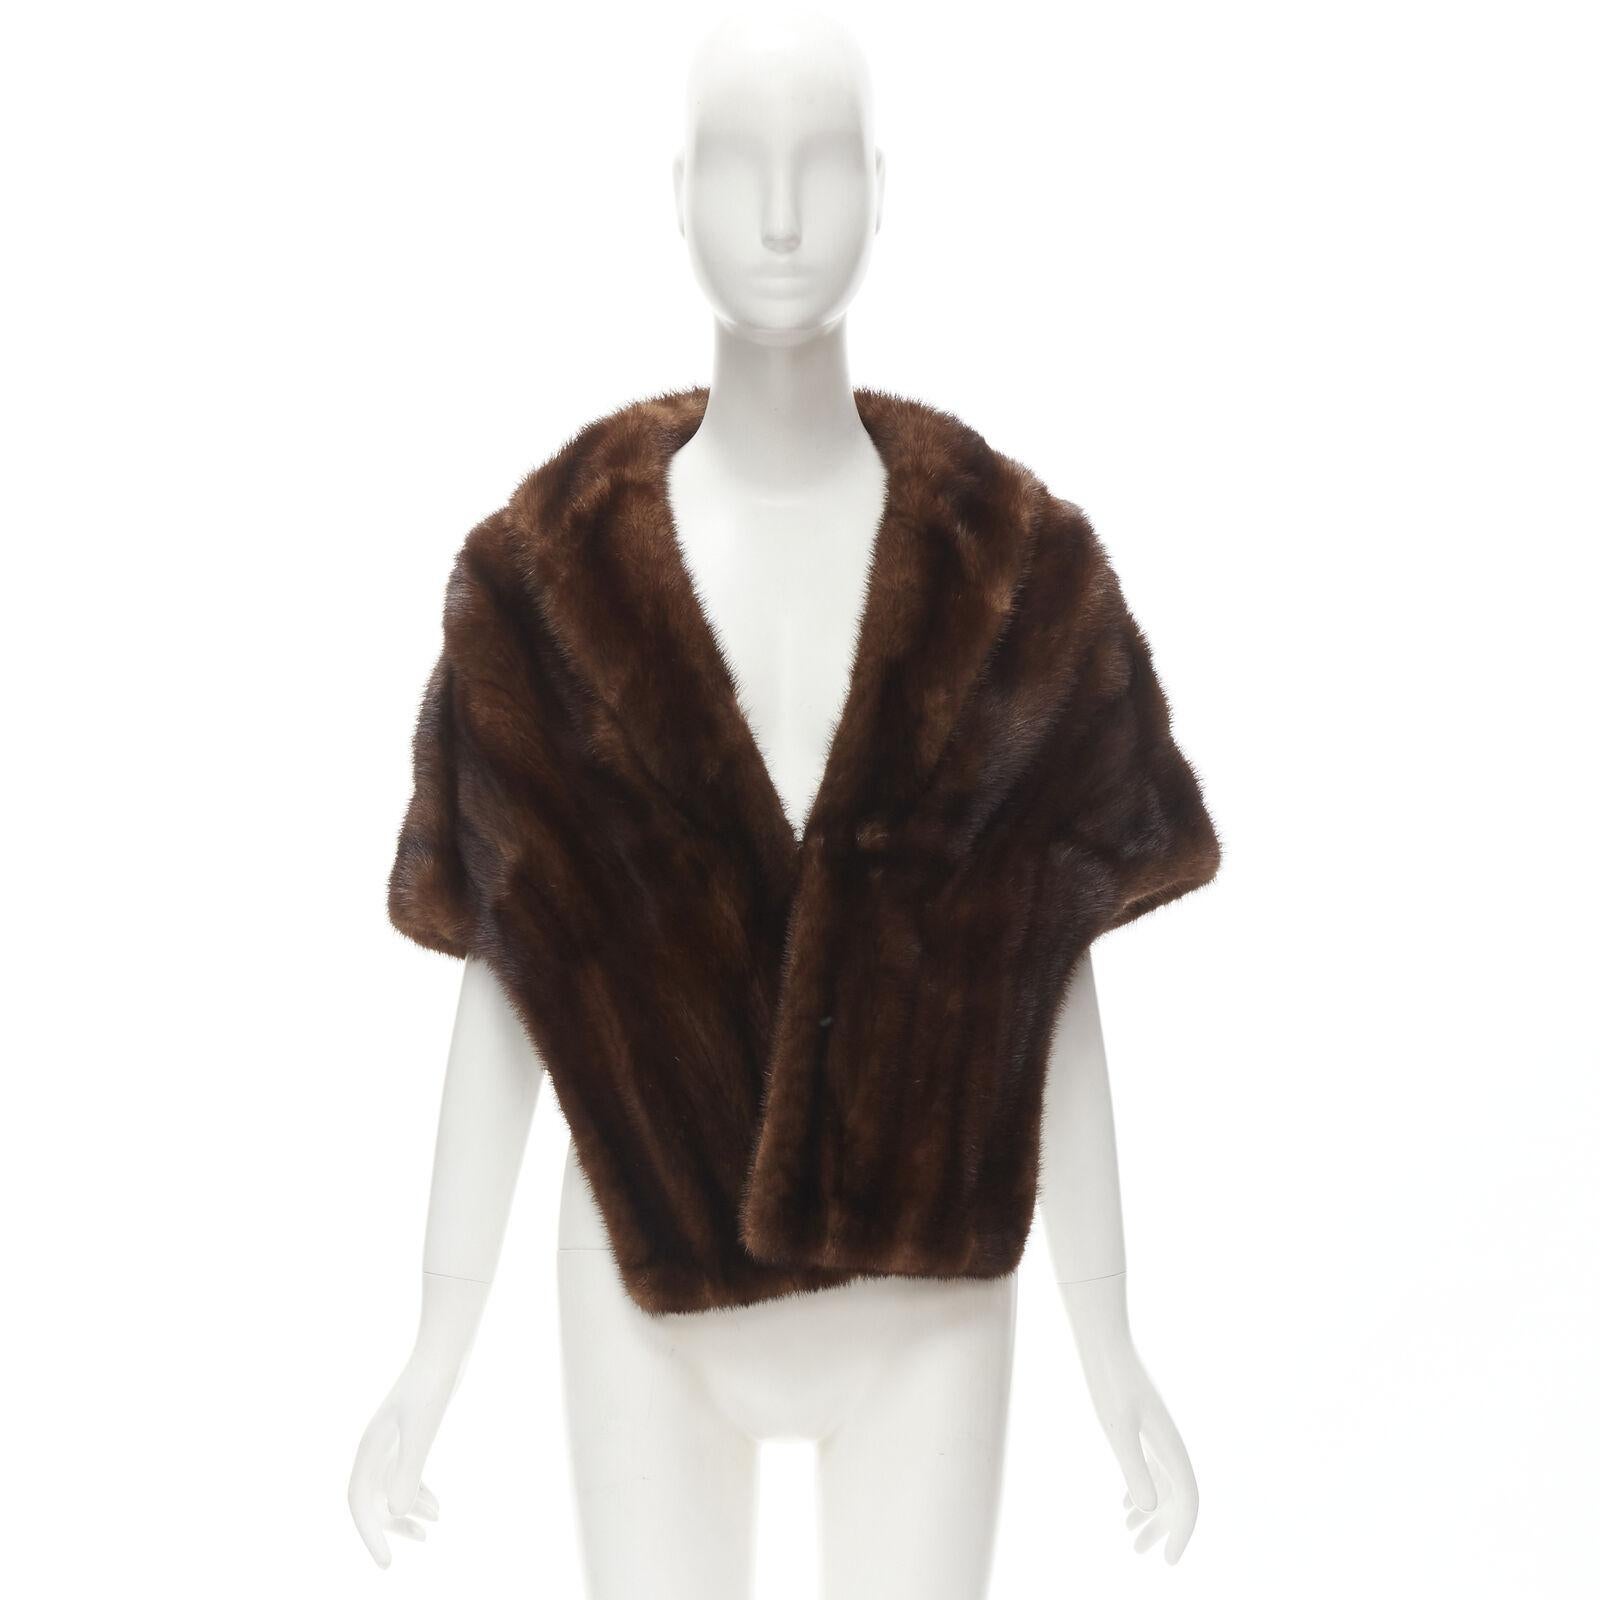 UNLABELLED brown mink fur shoulder shawl scarf hook eye closure For Sale 5